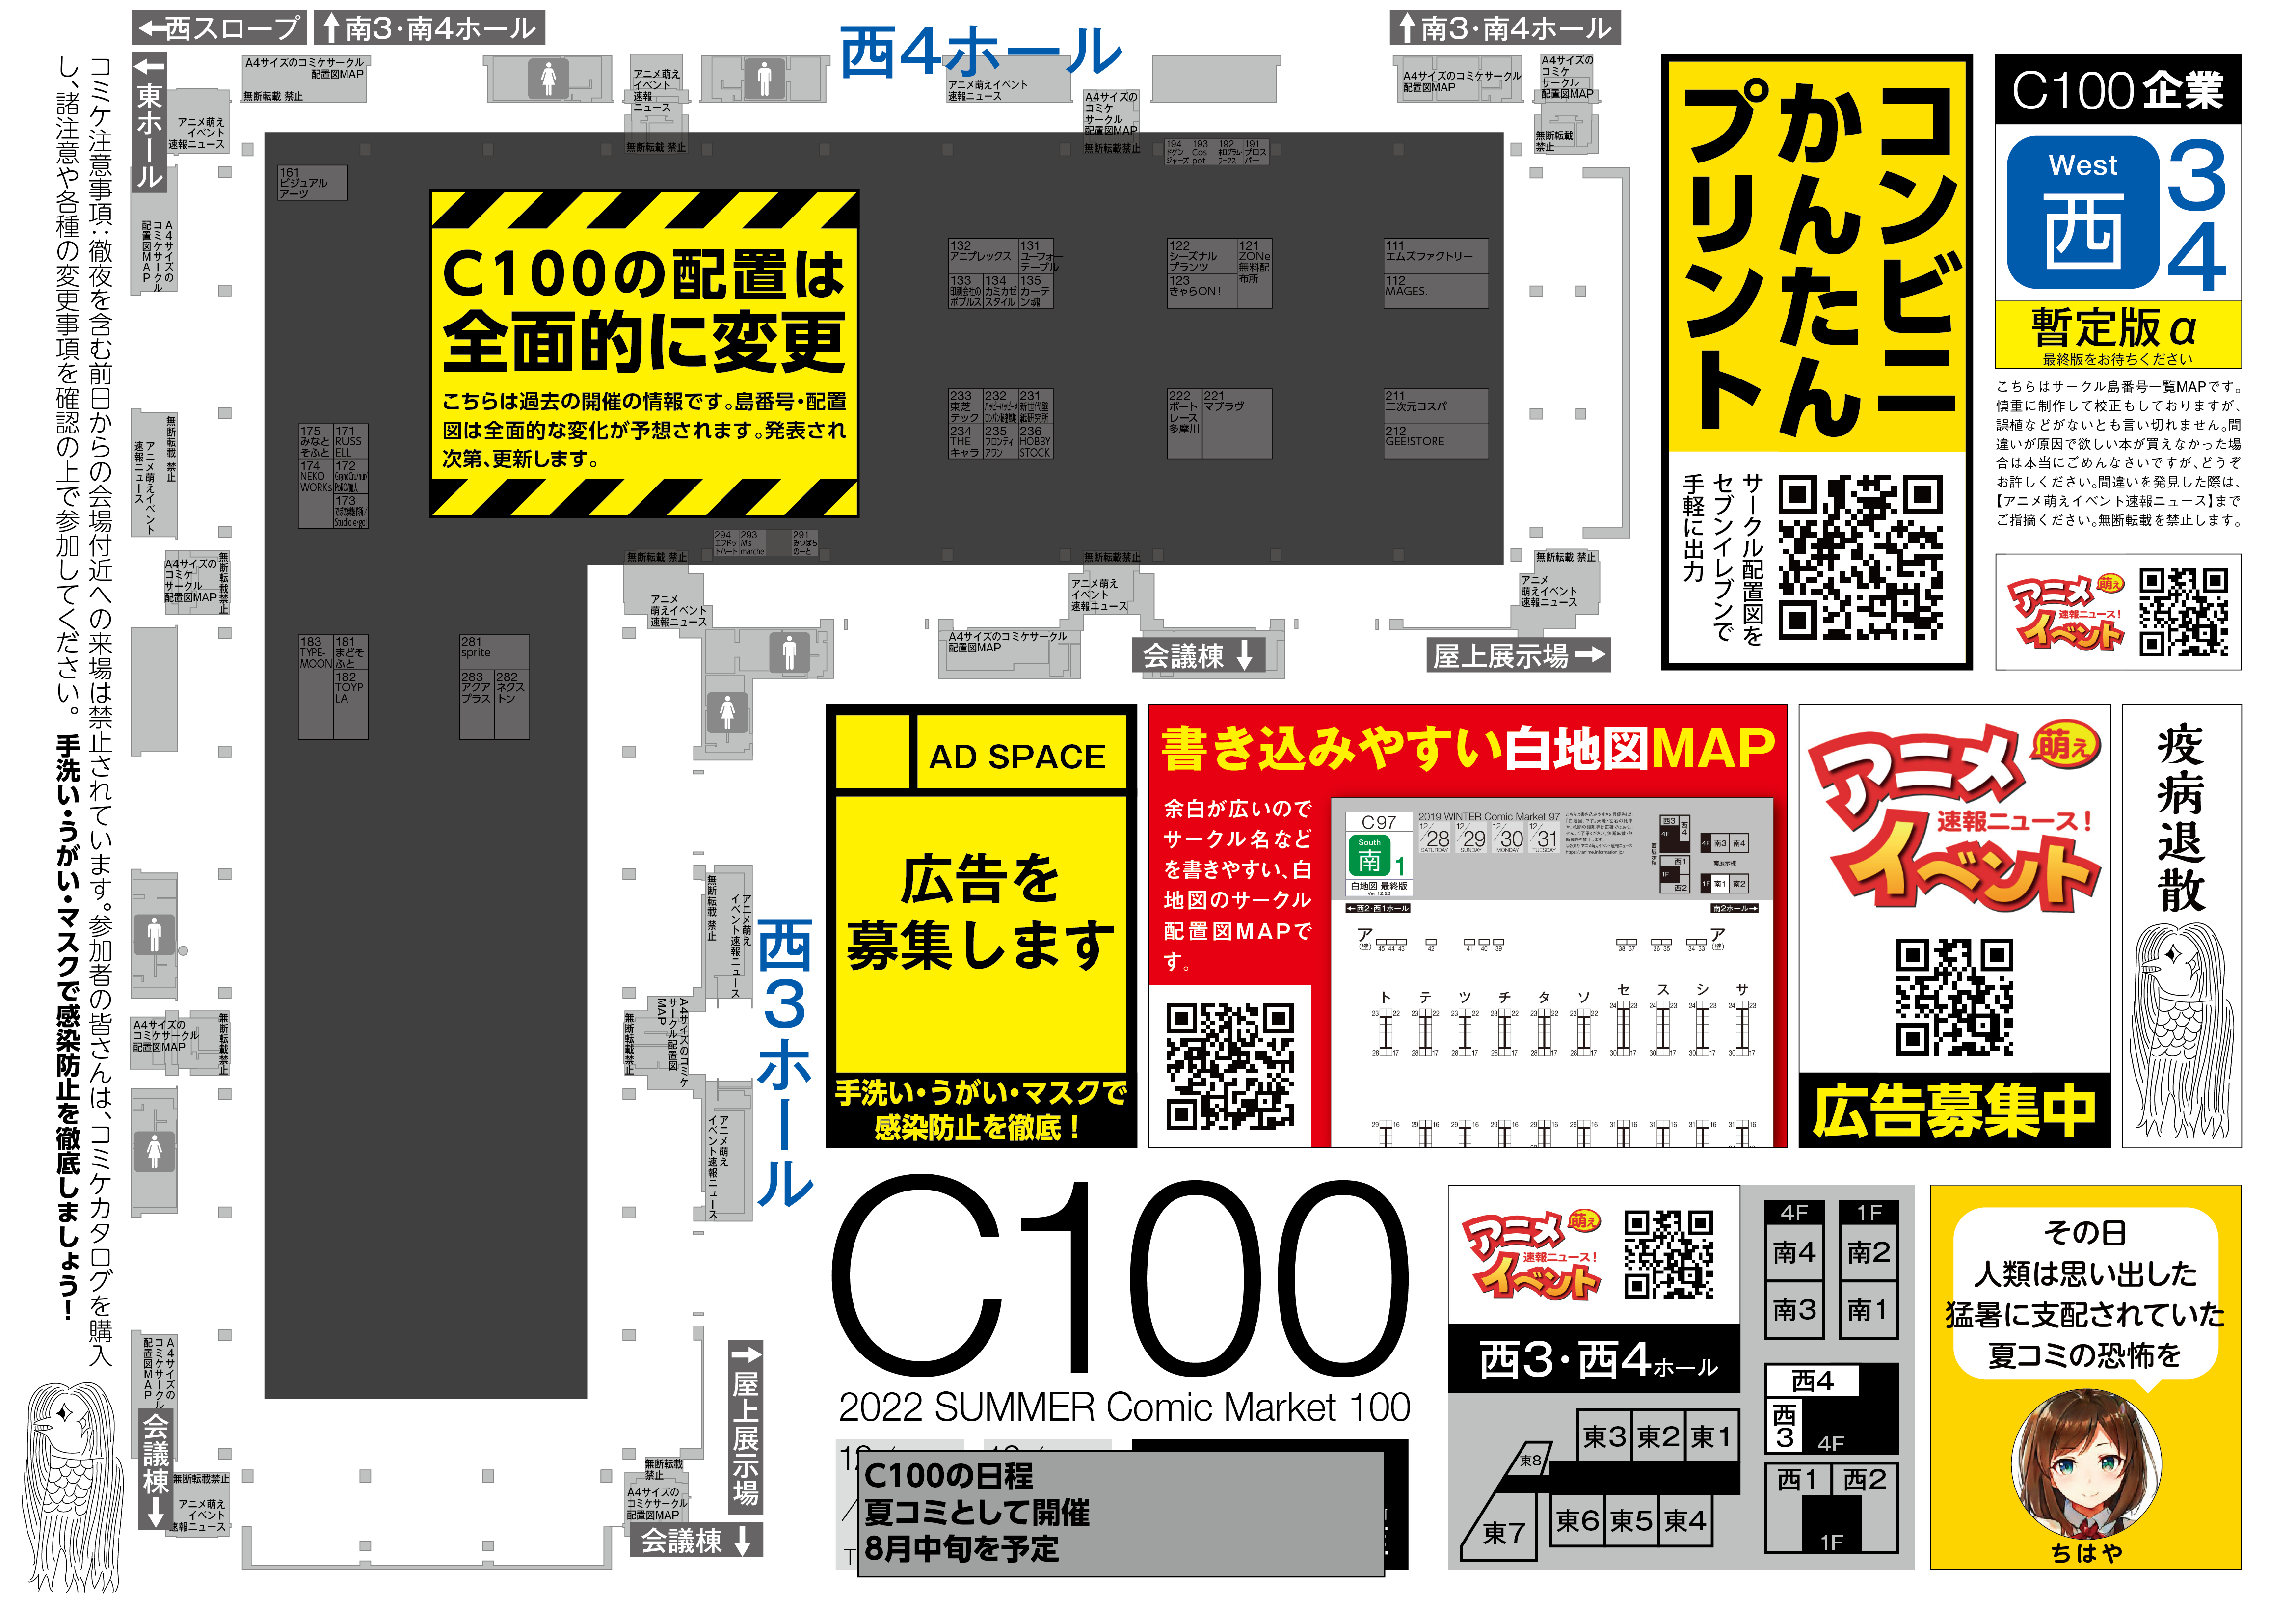 【西3・西4ホール】C100コミケ 企業ブース配置図マップ